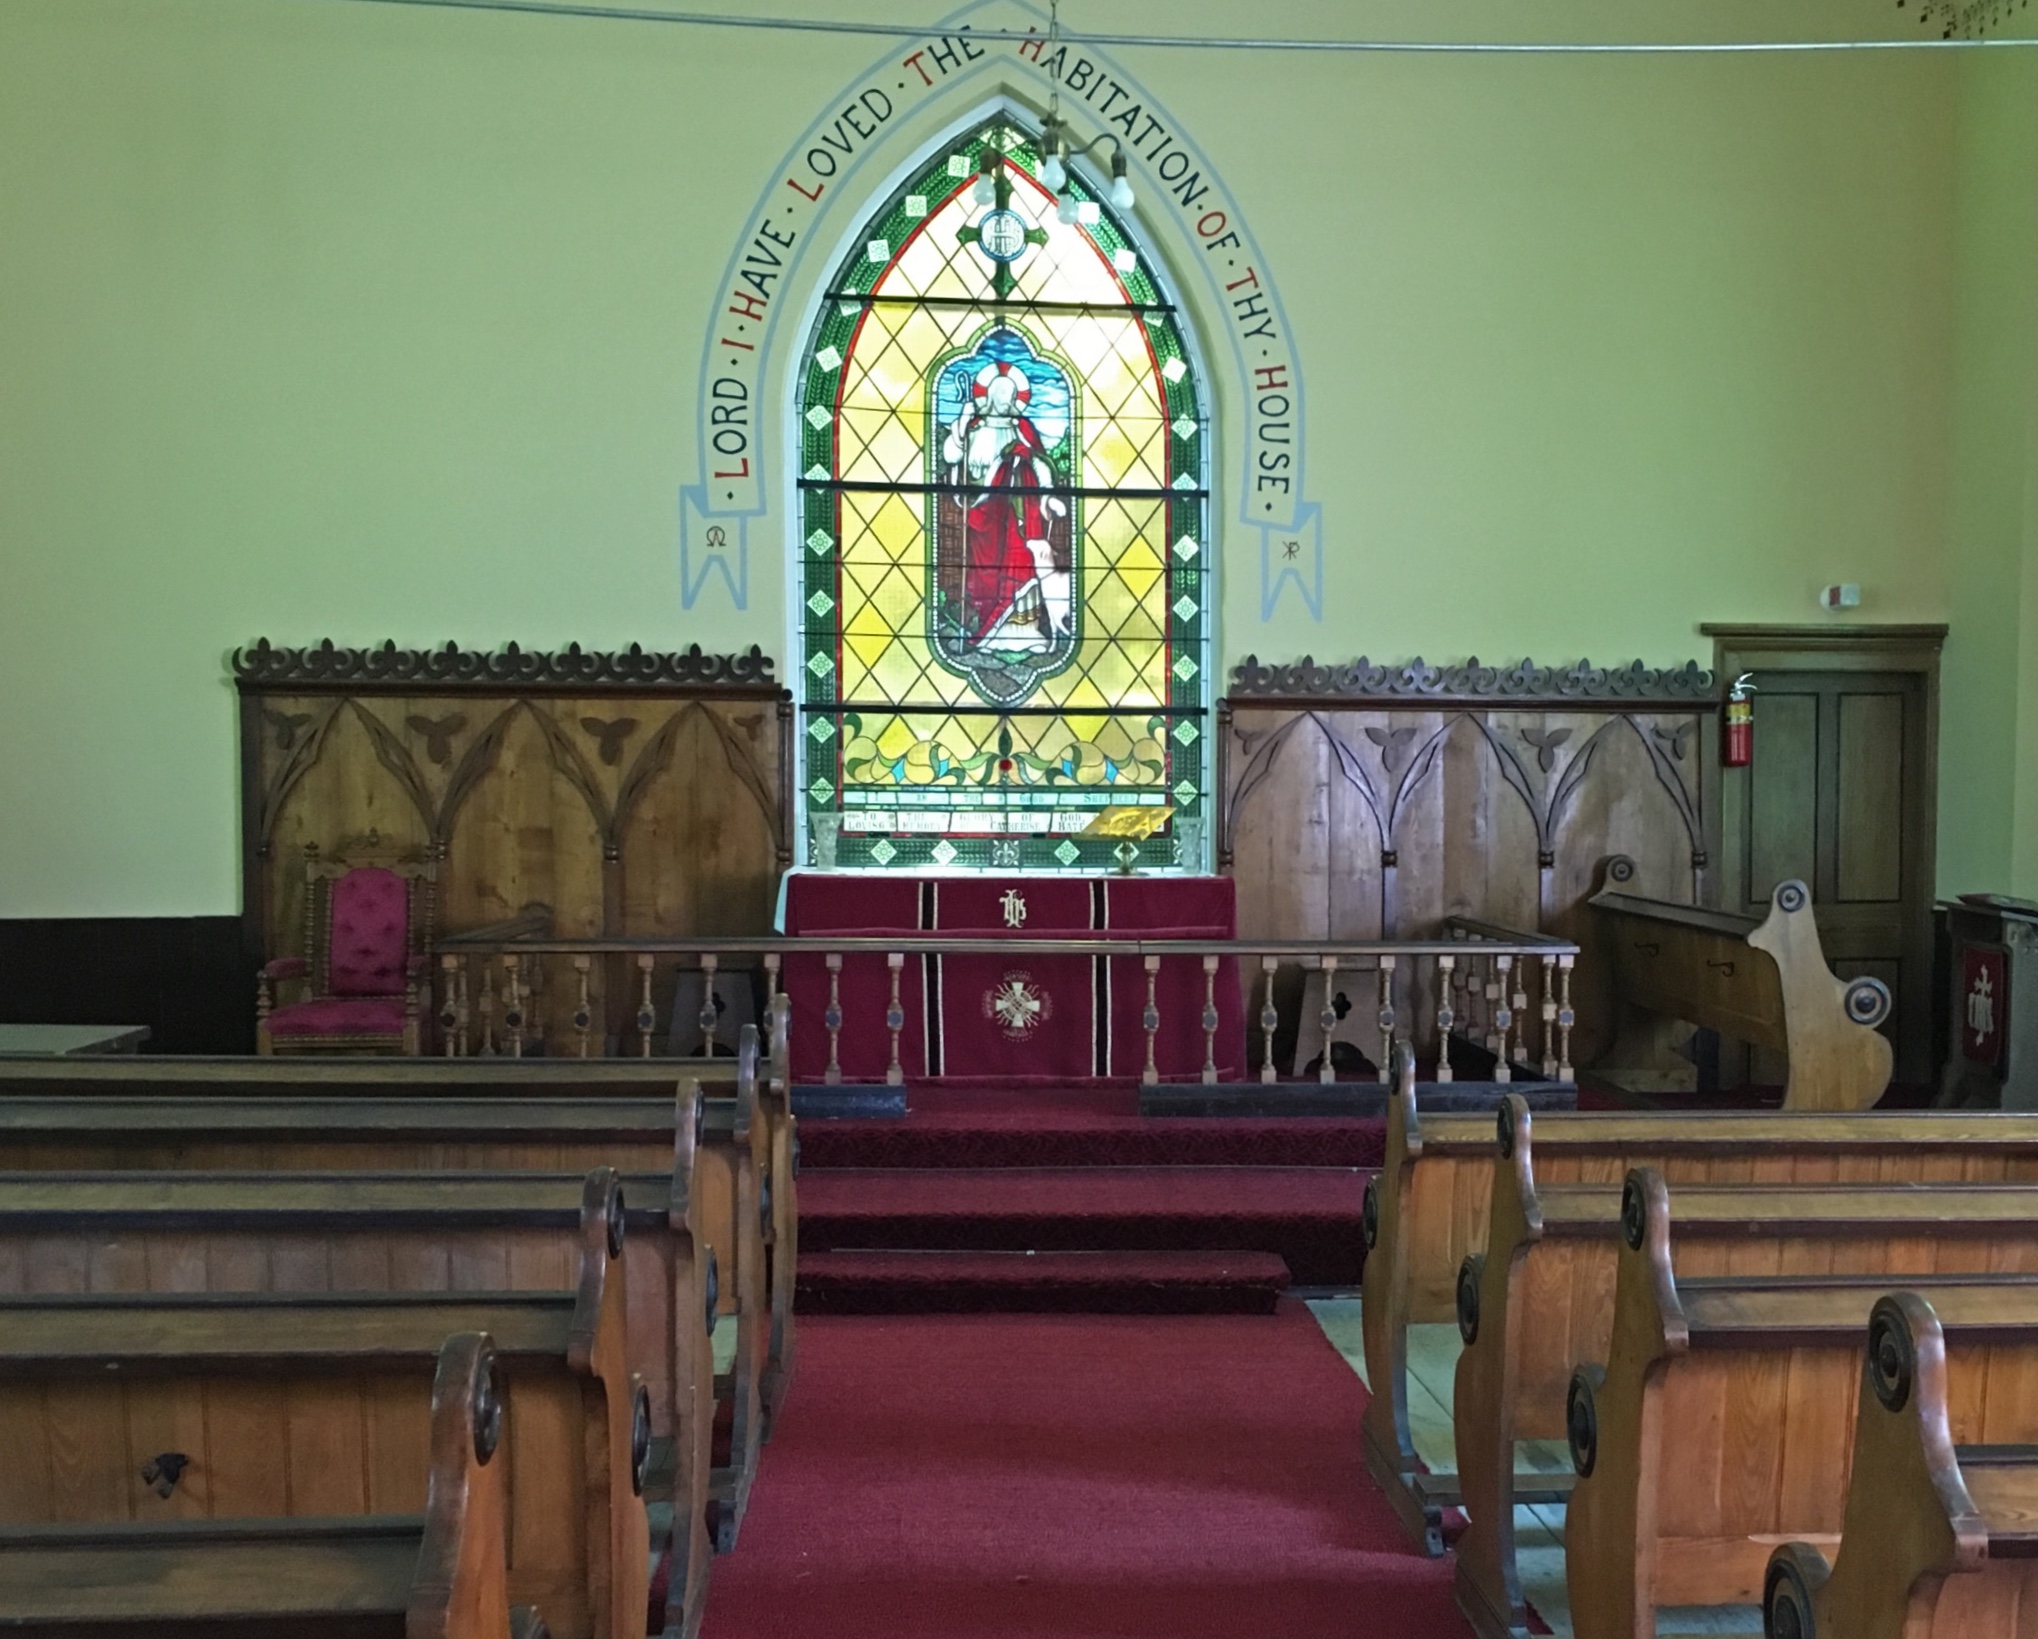 Photo couleur de l’intérieur de l'église anglicane de St. Bartholomew sur laquelle on aperçoit des rangées de bancs en bois faisant face à l’autel, lequel est orné de panneaux en bois fixés au mur sans apparat au centre duquel se trouve un vitrail. 